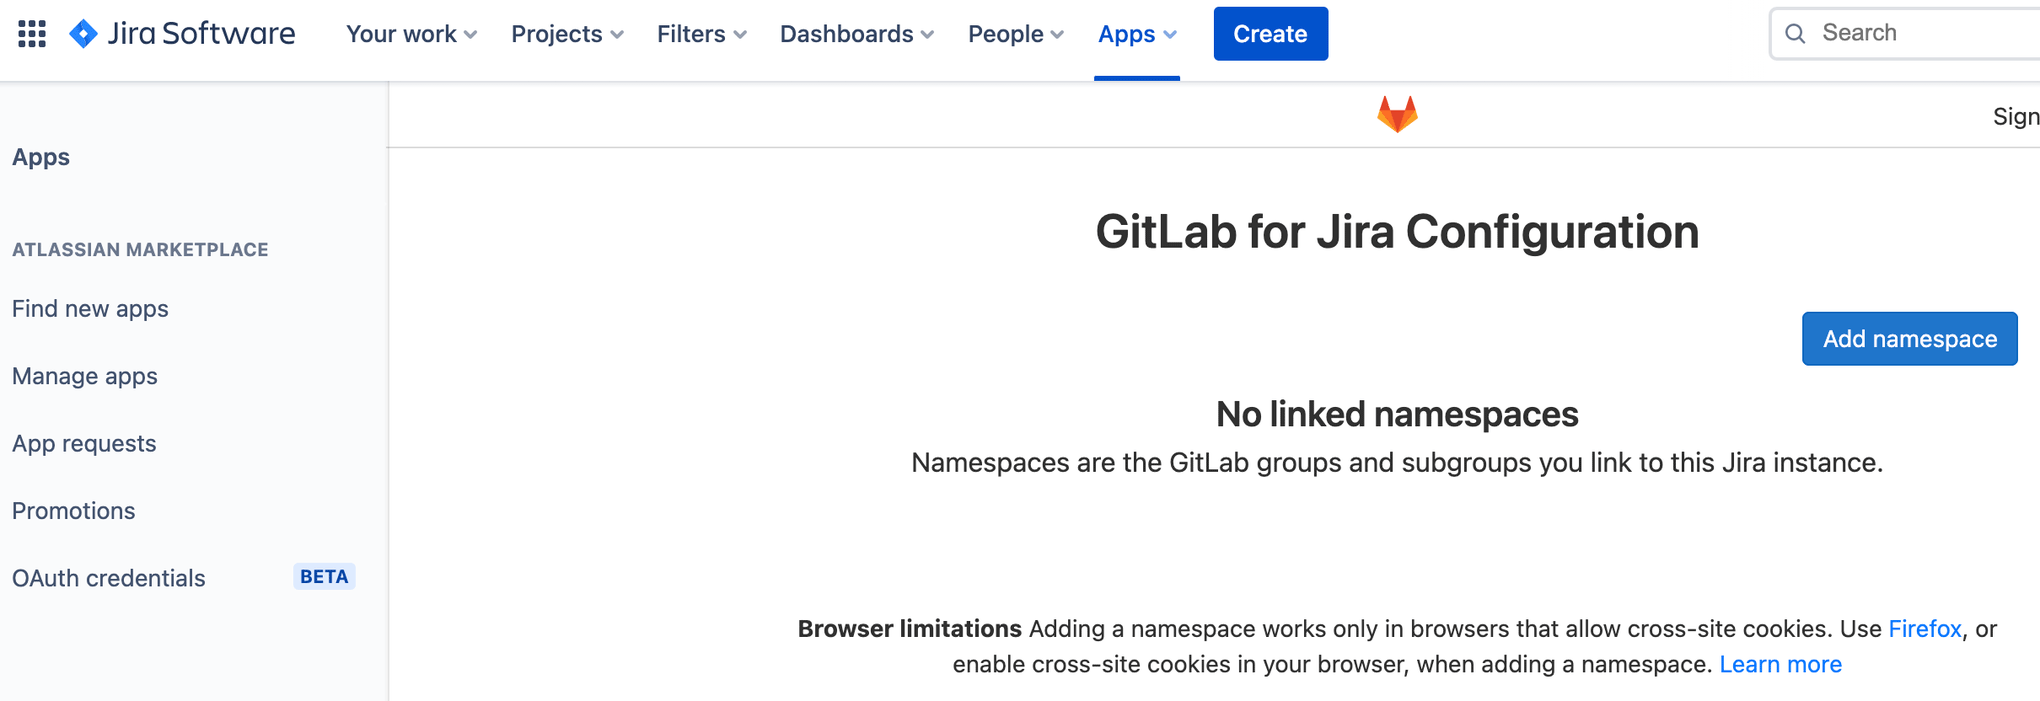 Экран для добавления пространства имен в конфигурацию GitLab в Jira Software